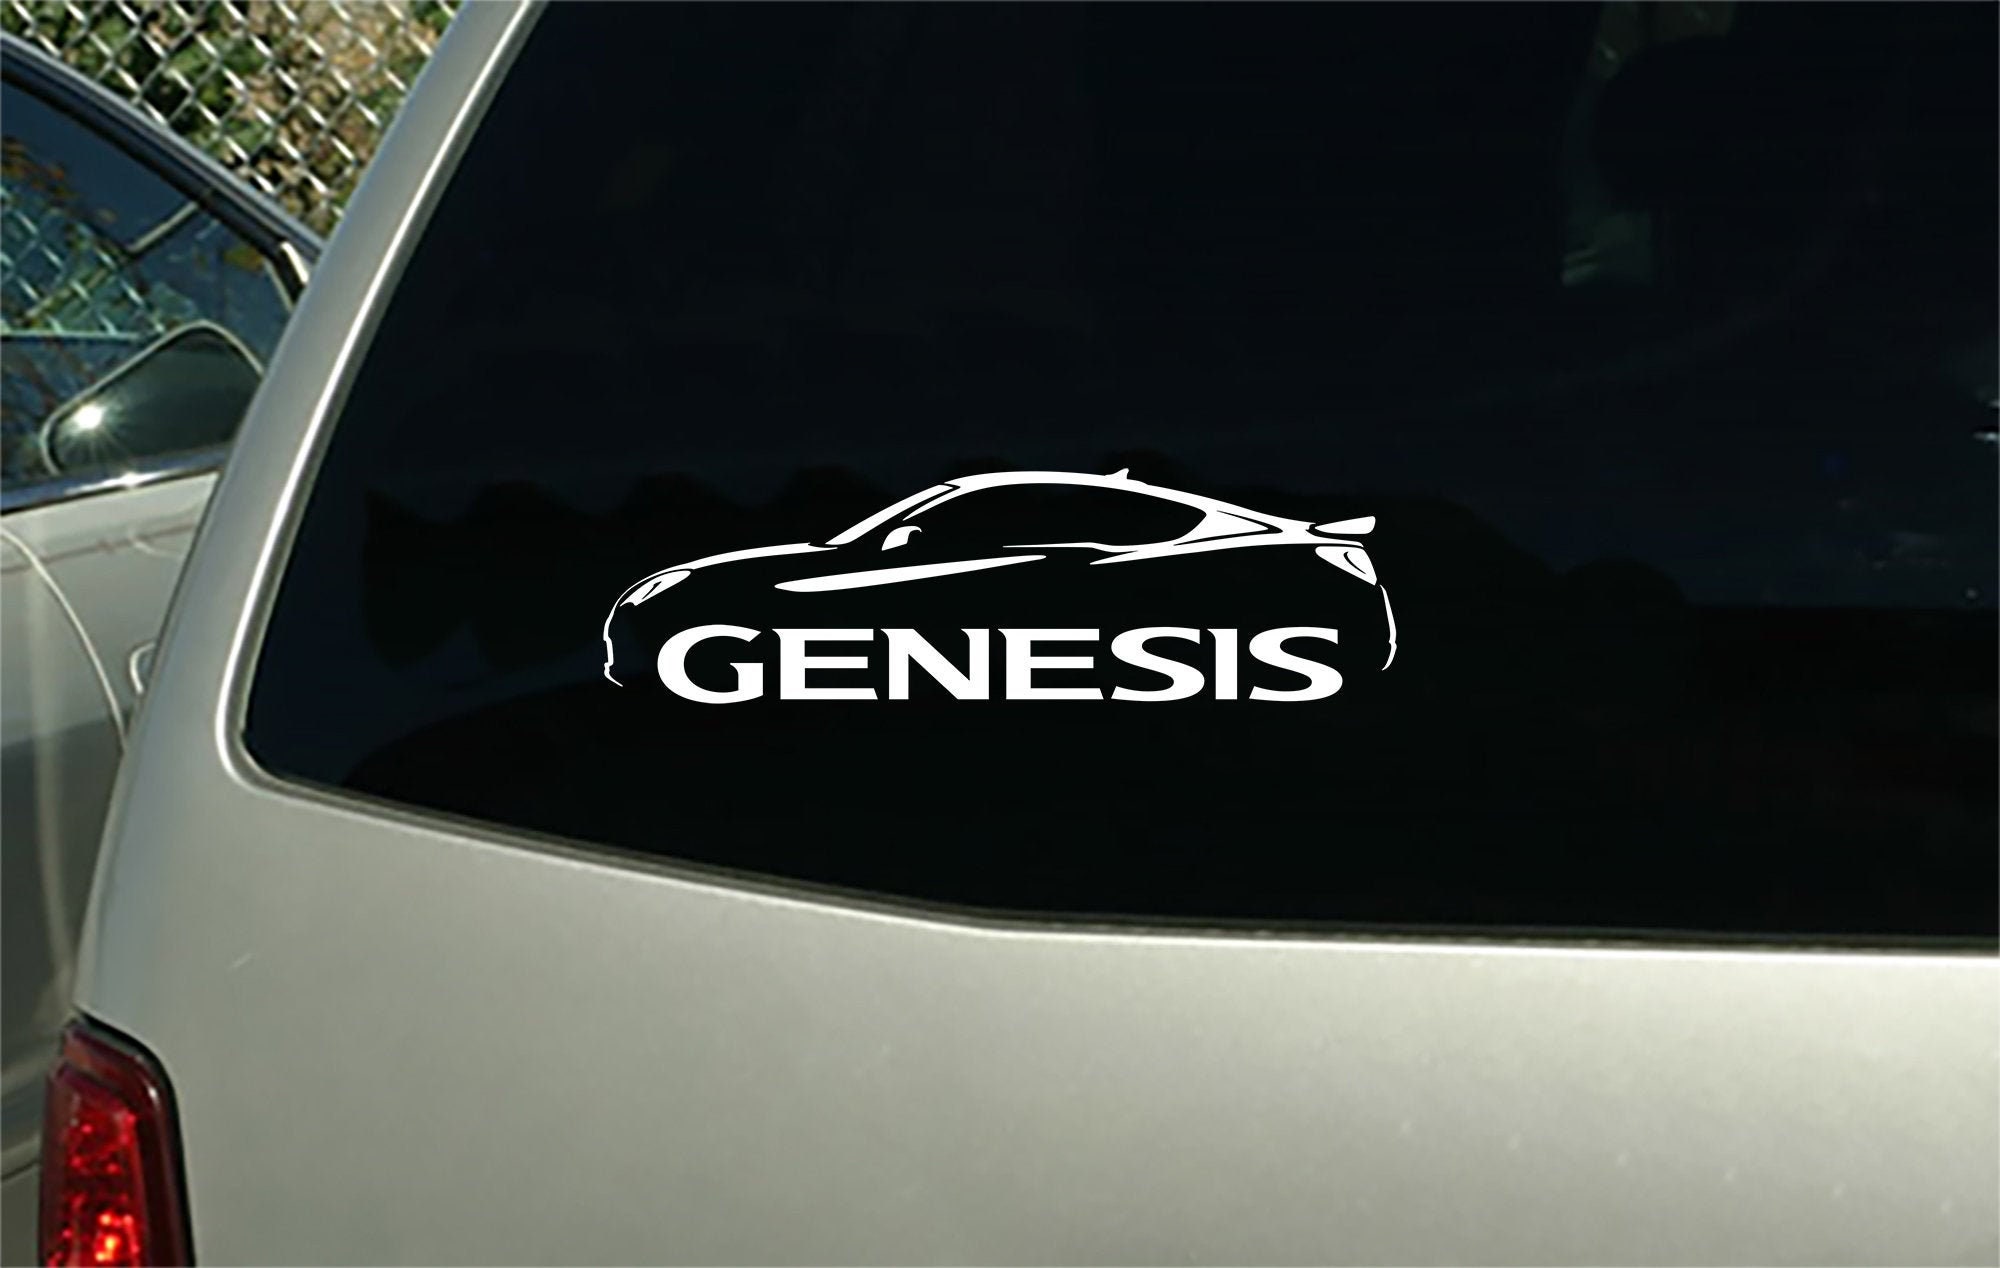 2012 Hyundai Genesis car sticker decal wall graphic  Etsy